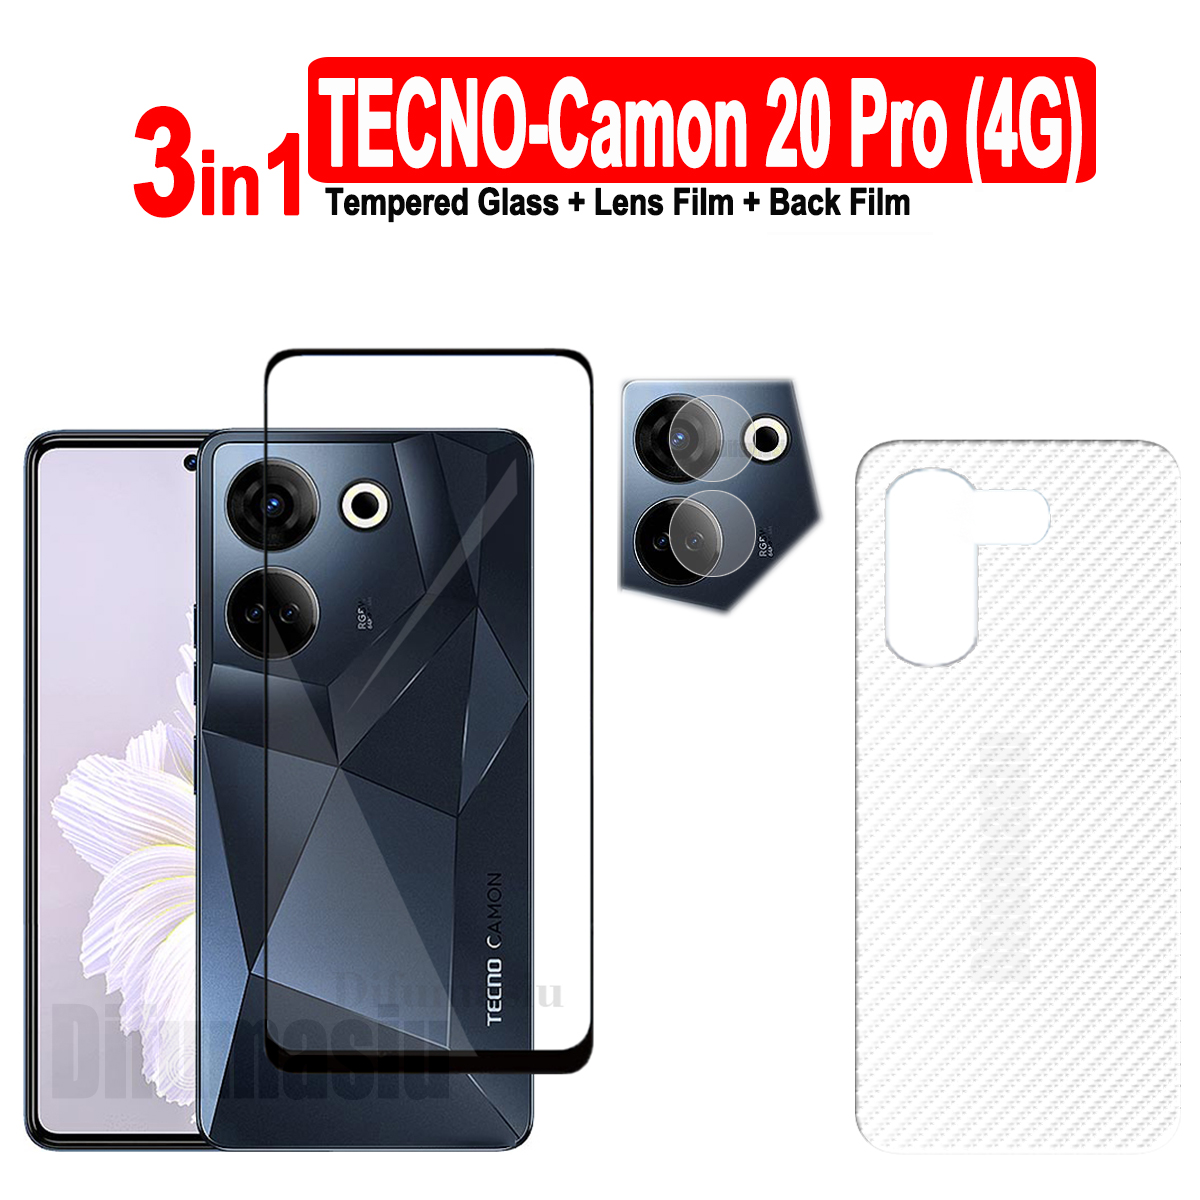 Tecno Camon 20 Kính cường lực chuyên nghiệp Tecno Camon 20 Pro Miếng dán màn hình Camon 20Pro bảo vệ ống kính máy ảnh bọc hoàn toàn màn hình kính 3in 1 sợi carbon miếng phim dán sau